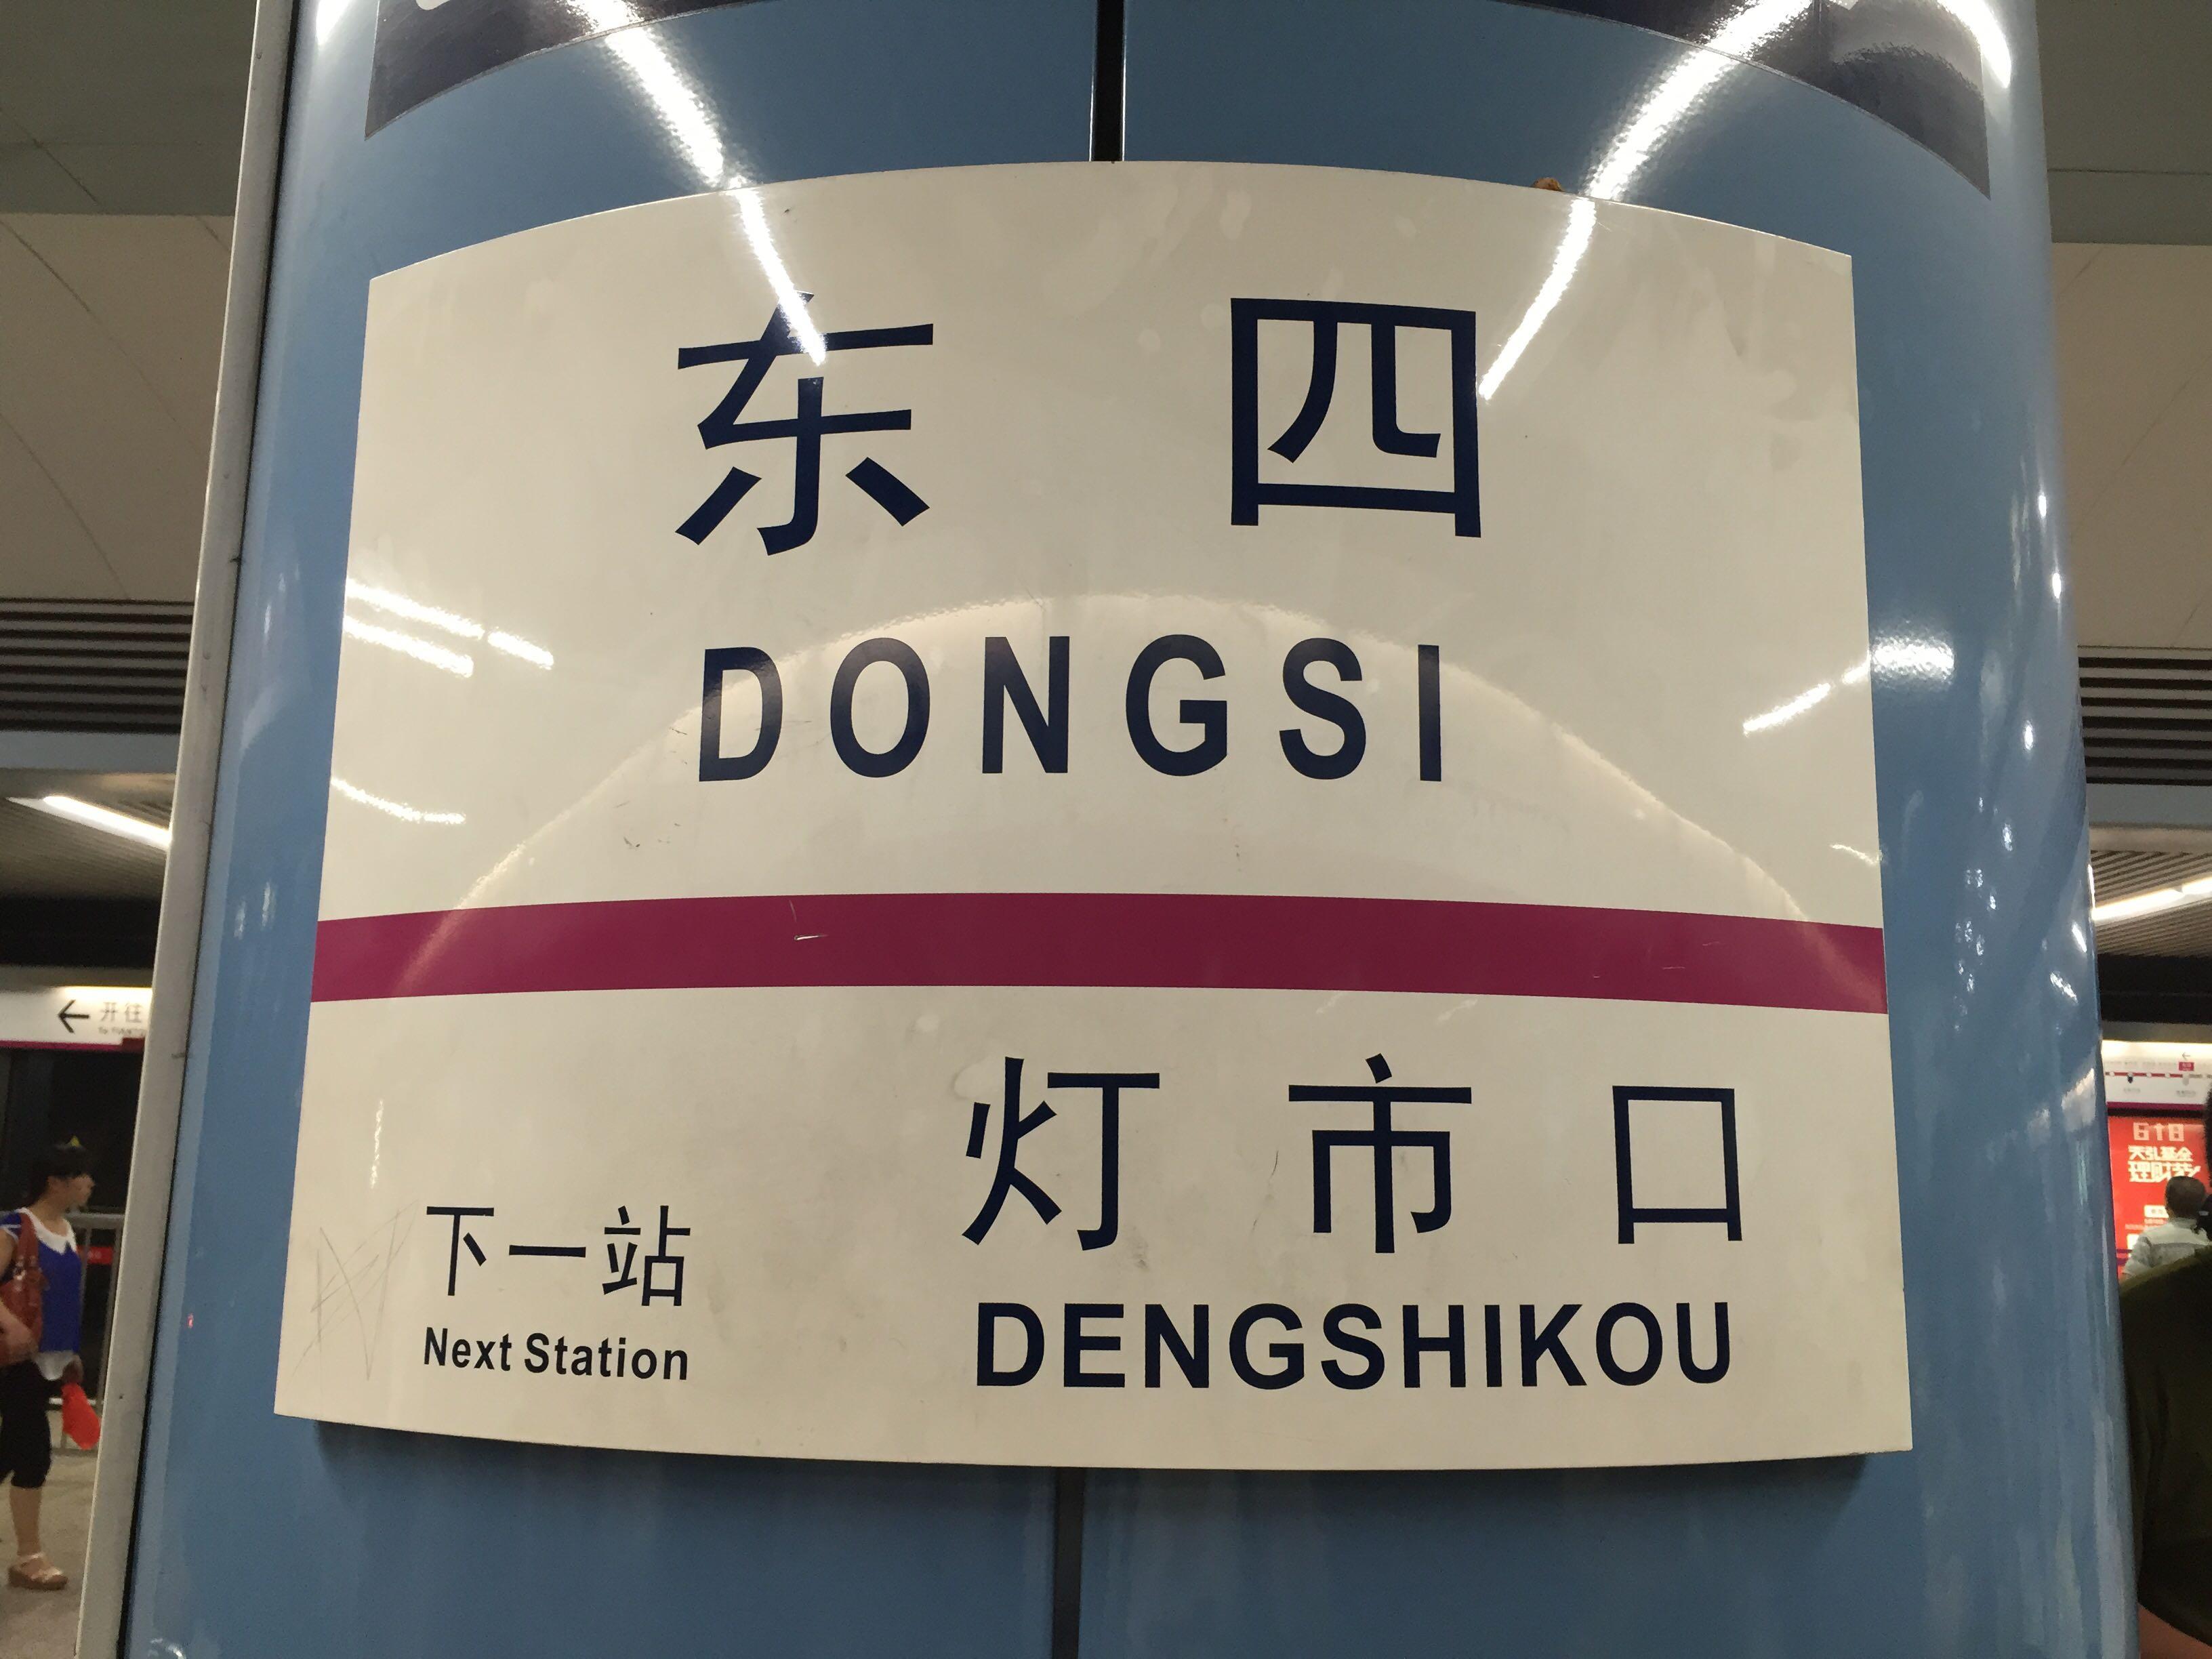 北京地铁6号线南锣鼓巷站,美丽的中国风柱子